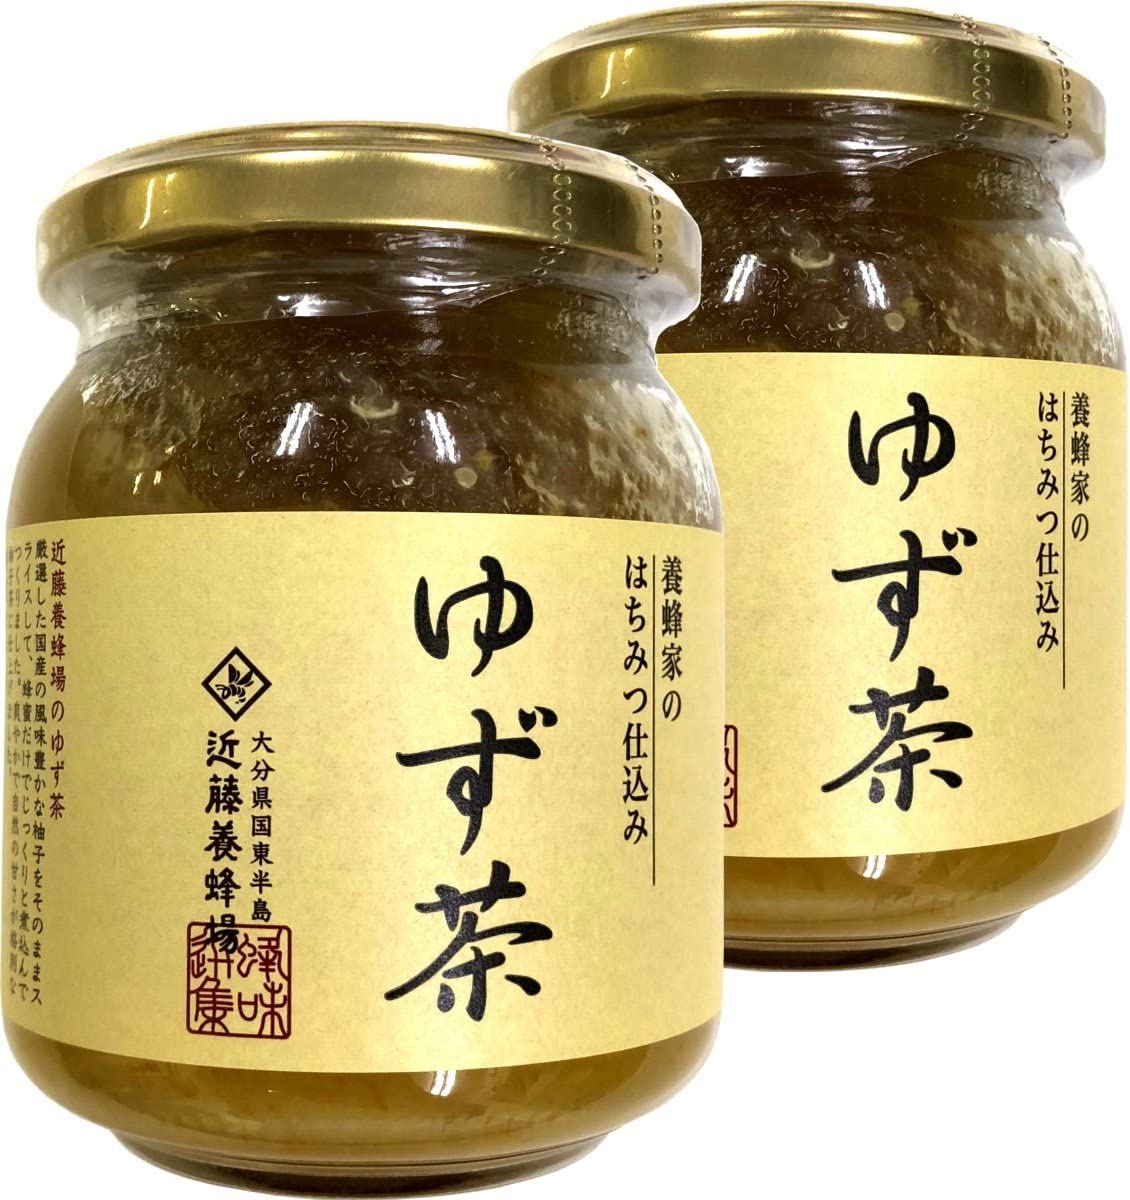 ゆず茶 250g 養蜂家のはちみつ仕込み 国産柚子 巣鴨のお茶屋さん 山年園 【2個セット】